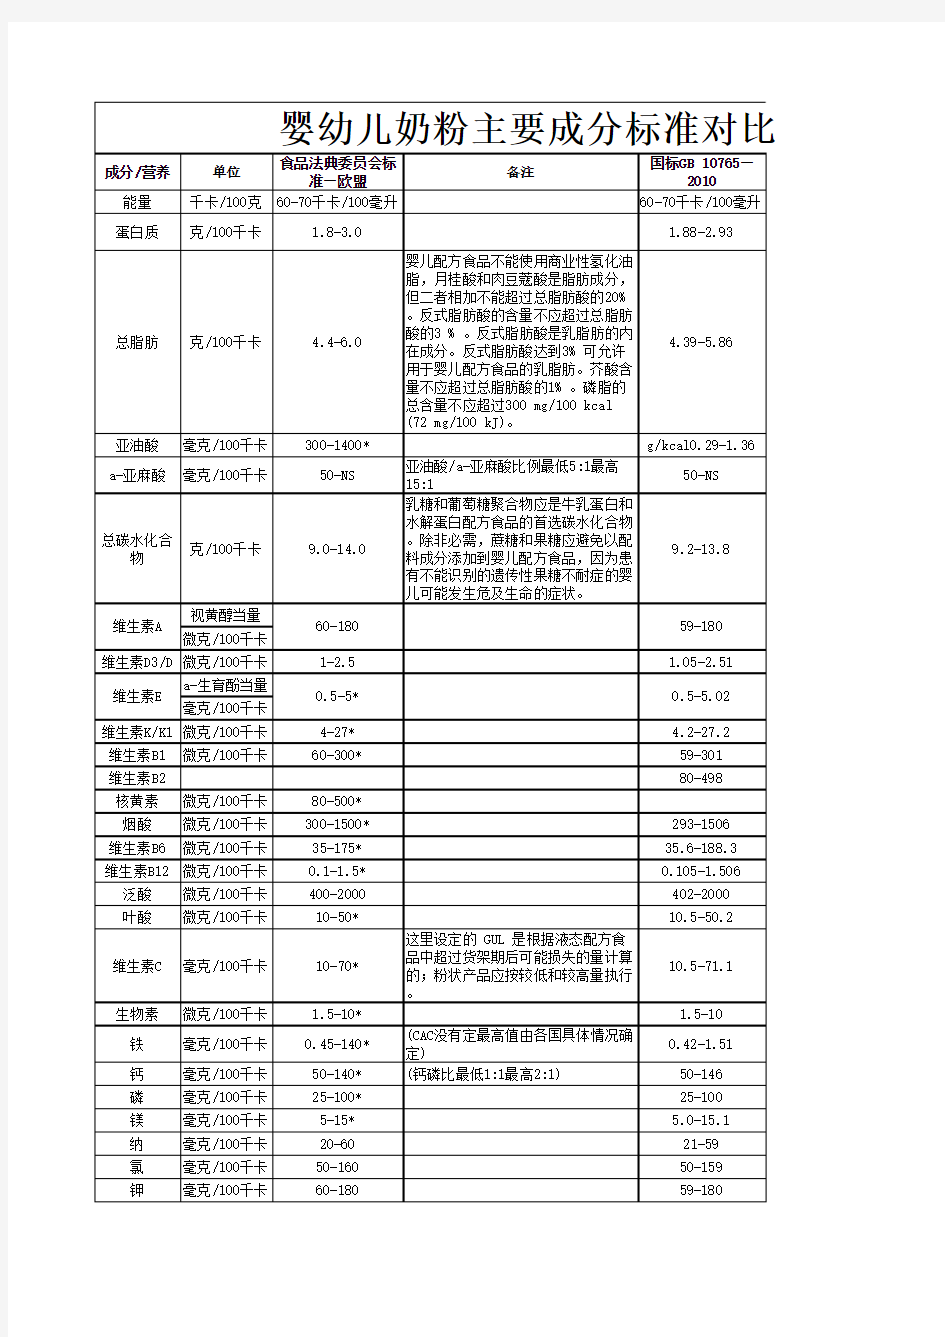 中国婴幼儿配方奶粉标准与欧盟标准比较(表)